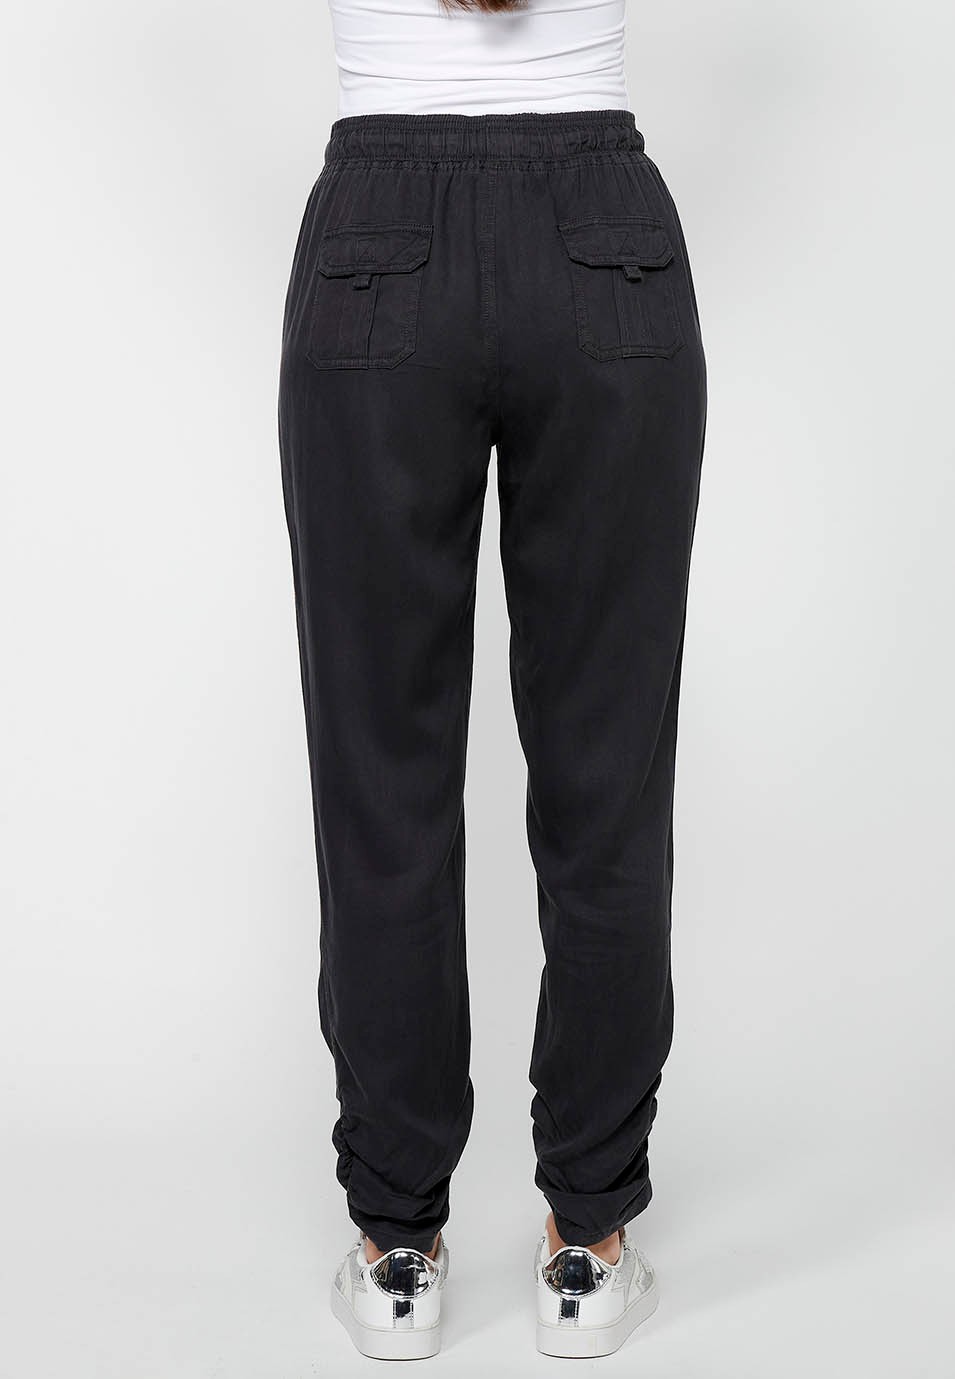 Pantalón largo jogger con Acabado rizado y Cintura engomada con Cuatro bolsillos, dos traseros con solapa de Color Negro para Mujer 6